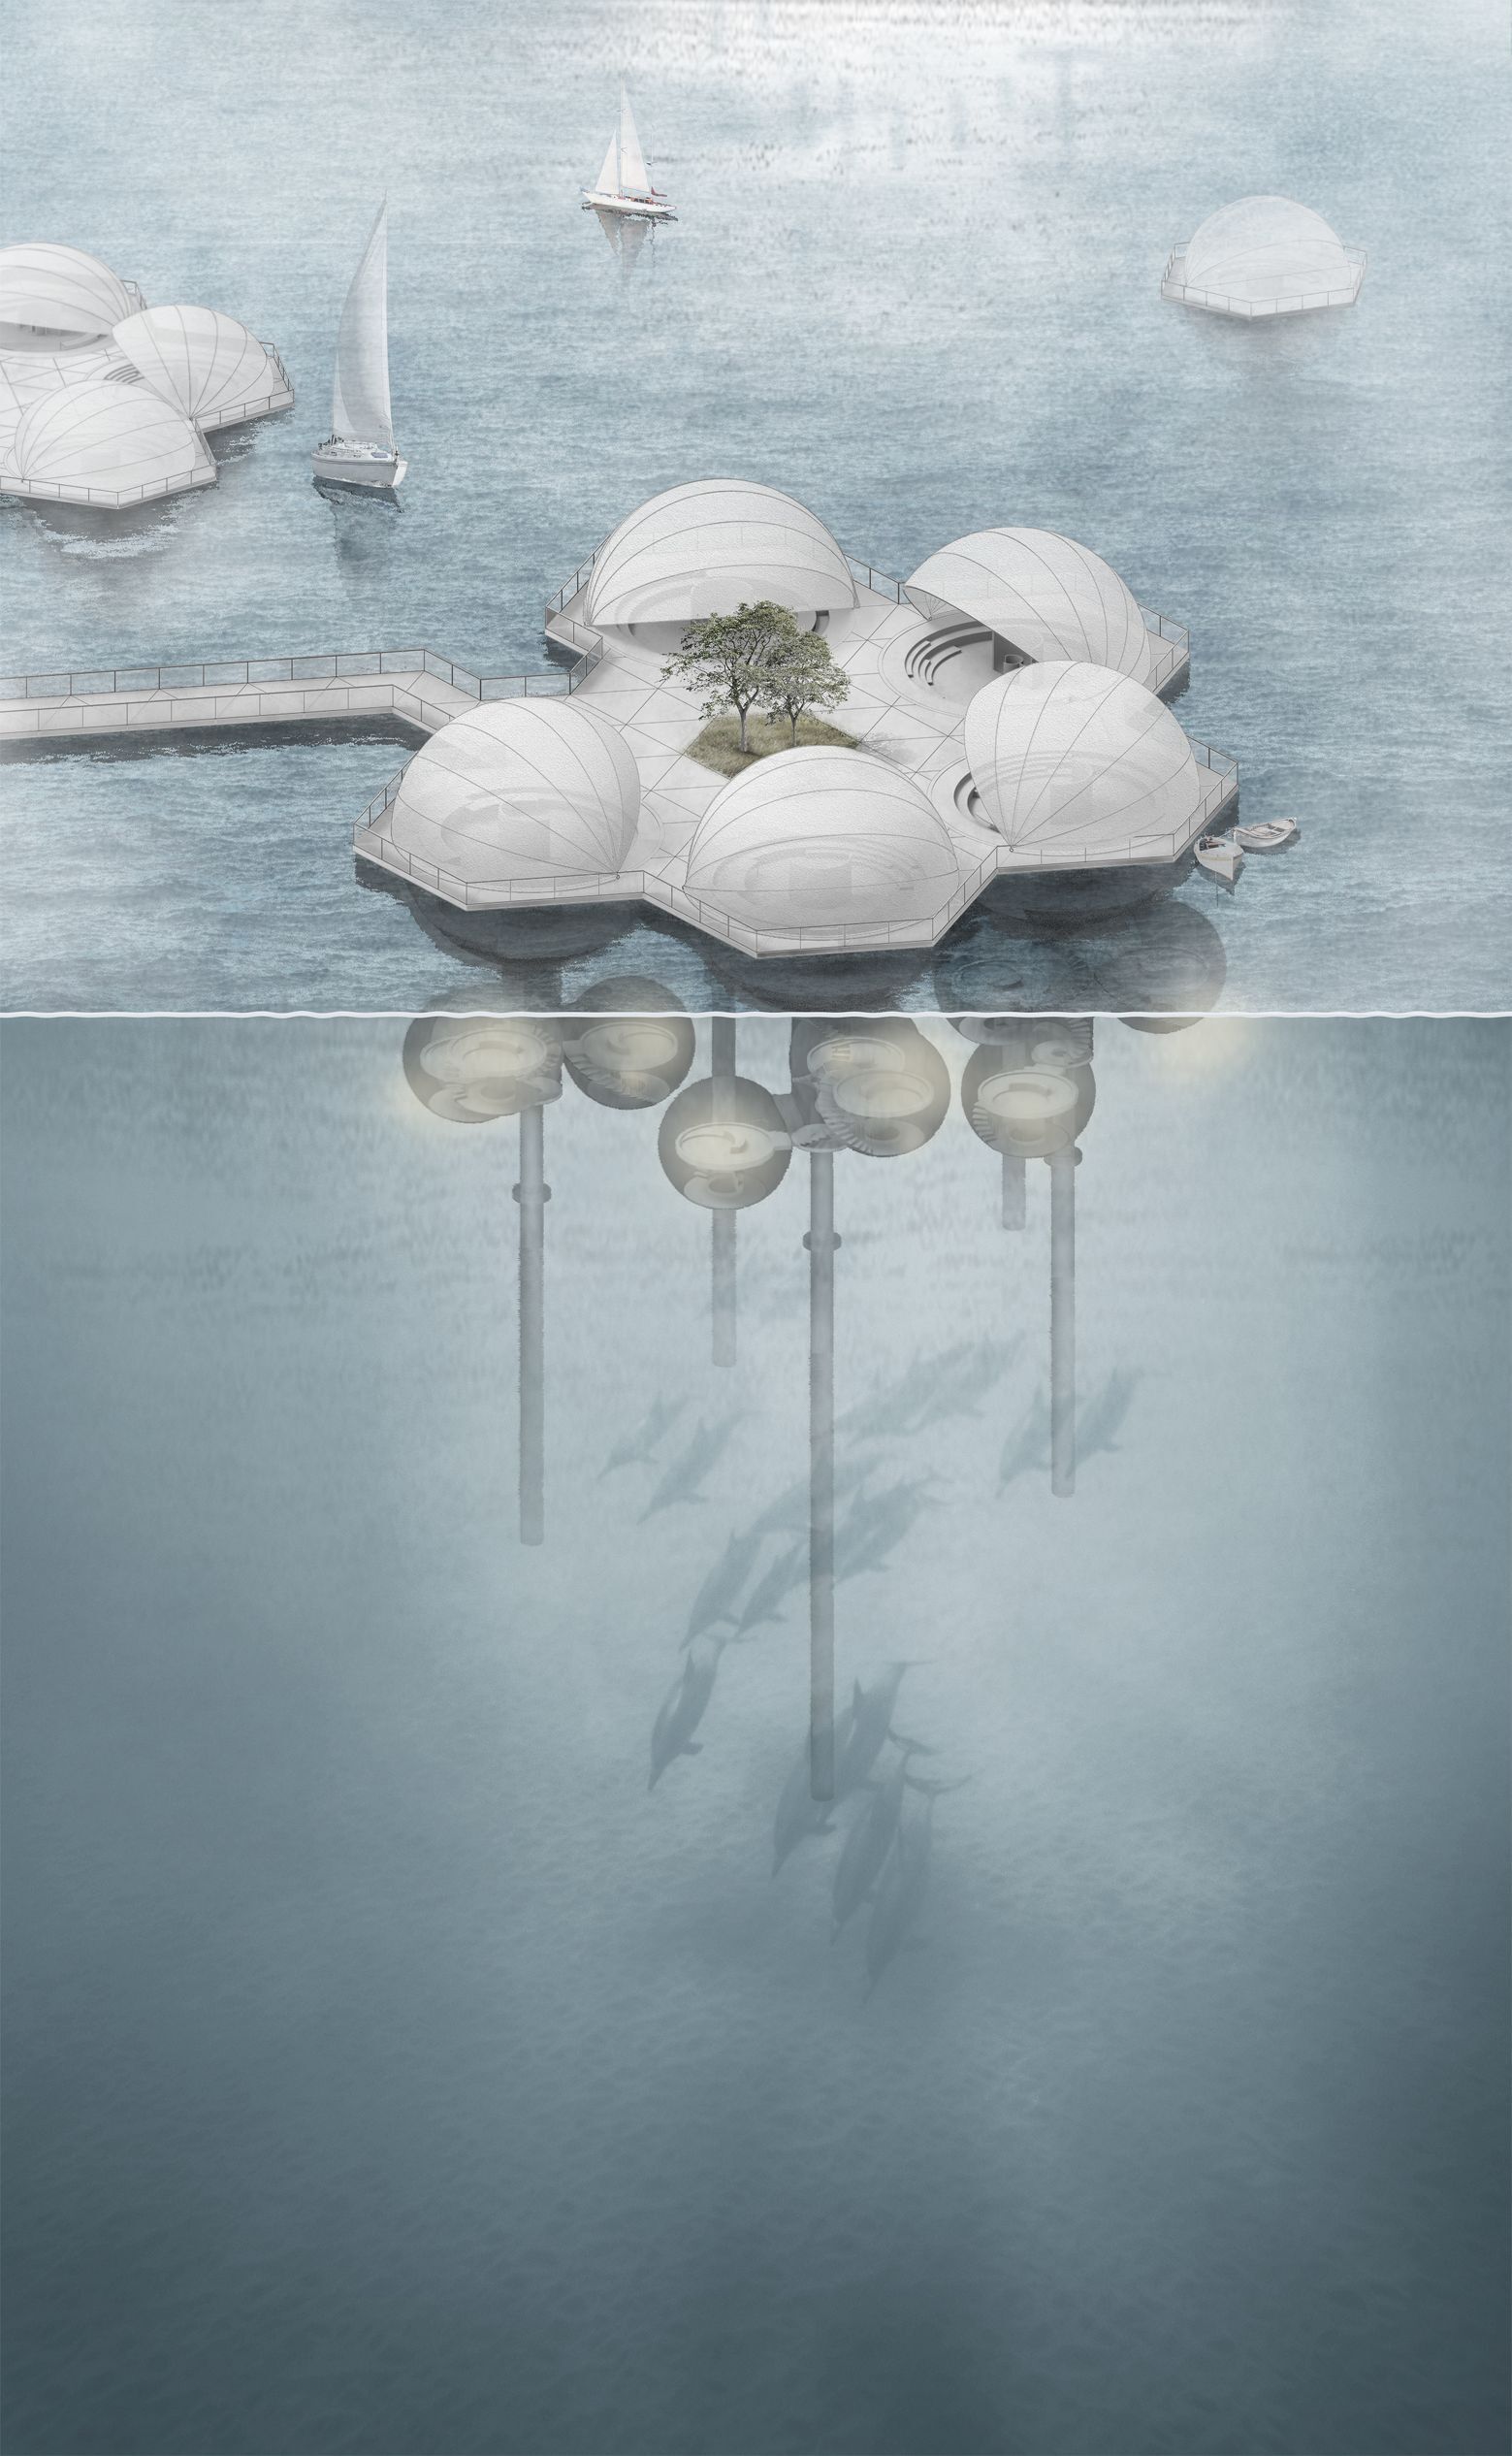 18级邹连凯 泛家计划—未来水上模块化建筑设计